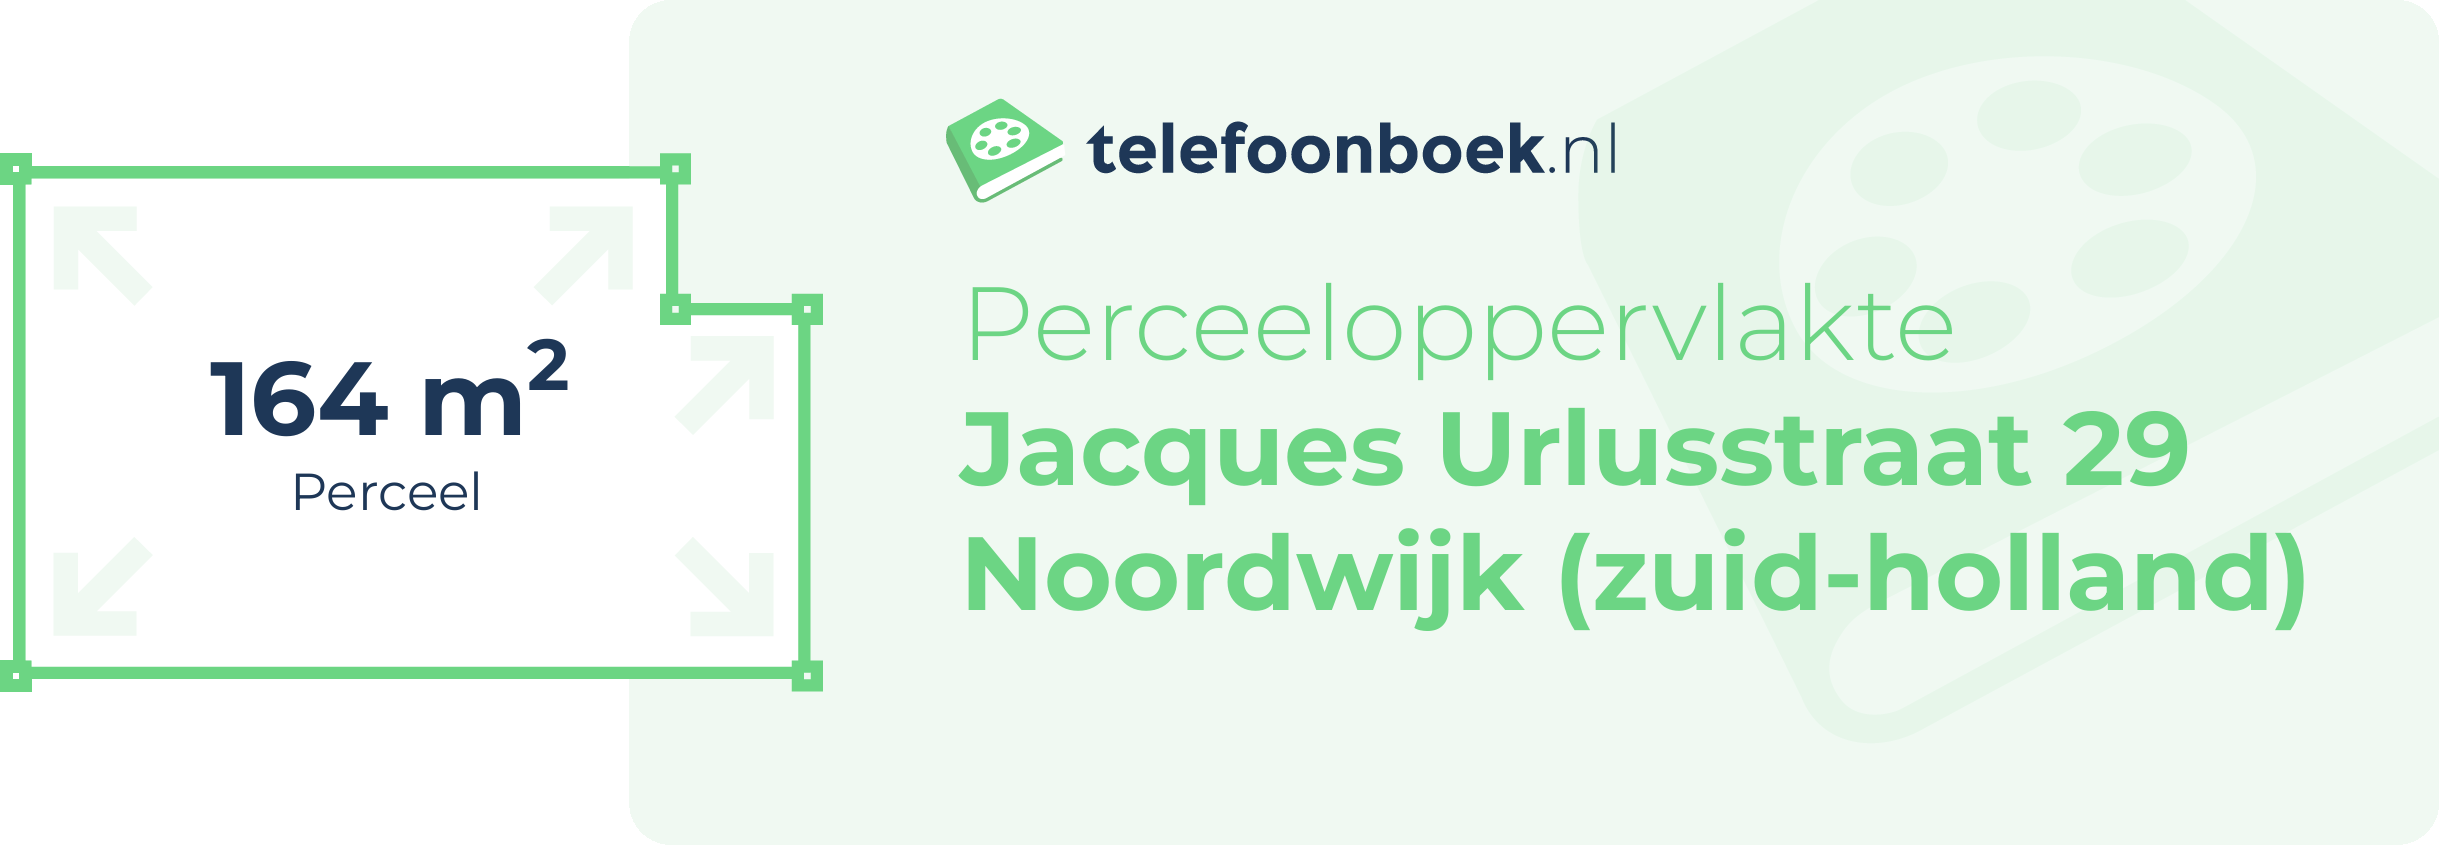 Perceeloppervlakte Jacques Urlusstraat 29 Noordwijk (Zuid-Holland)